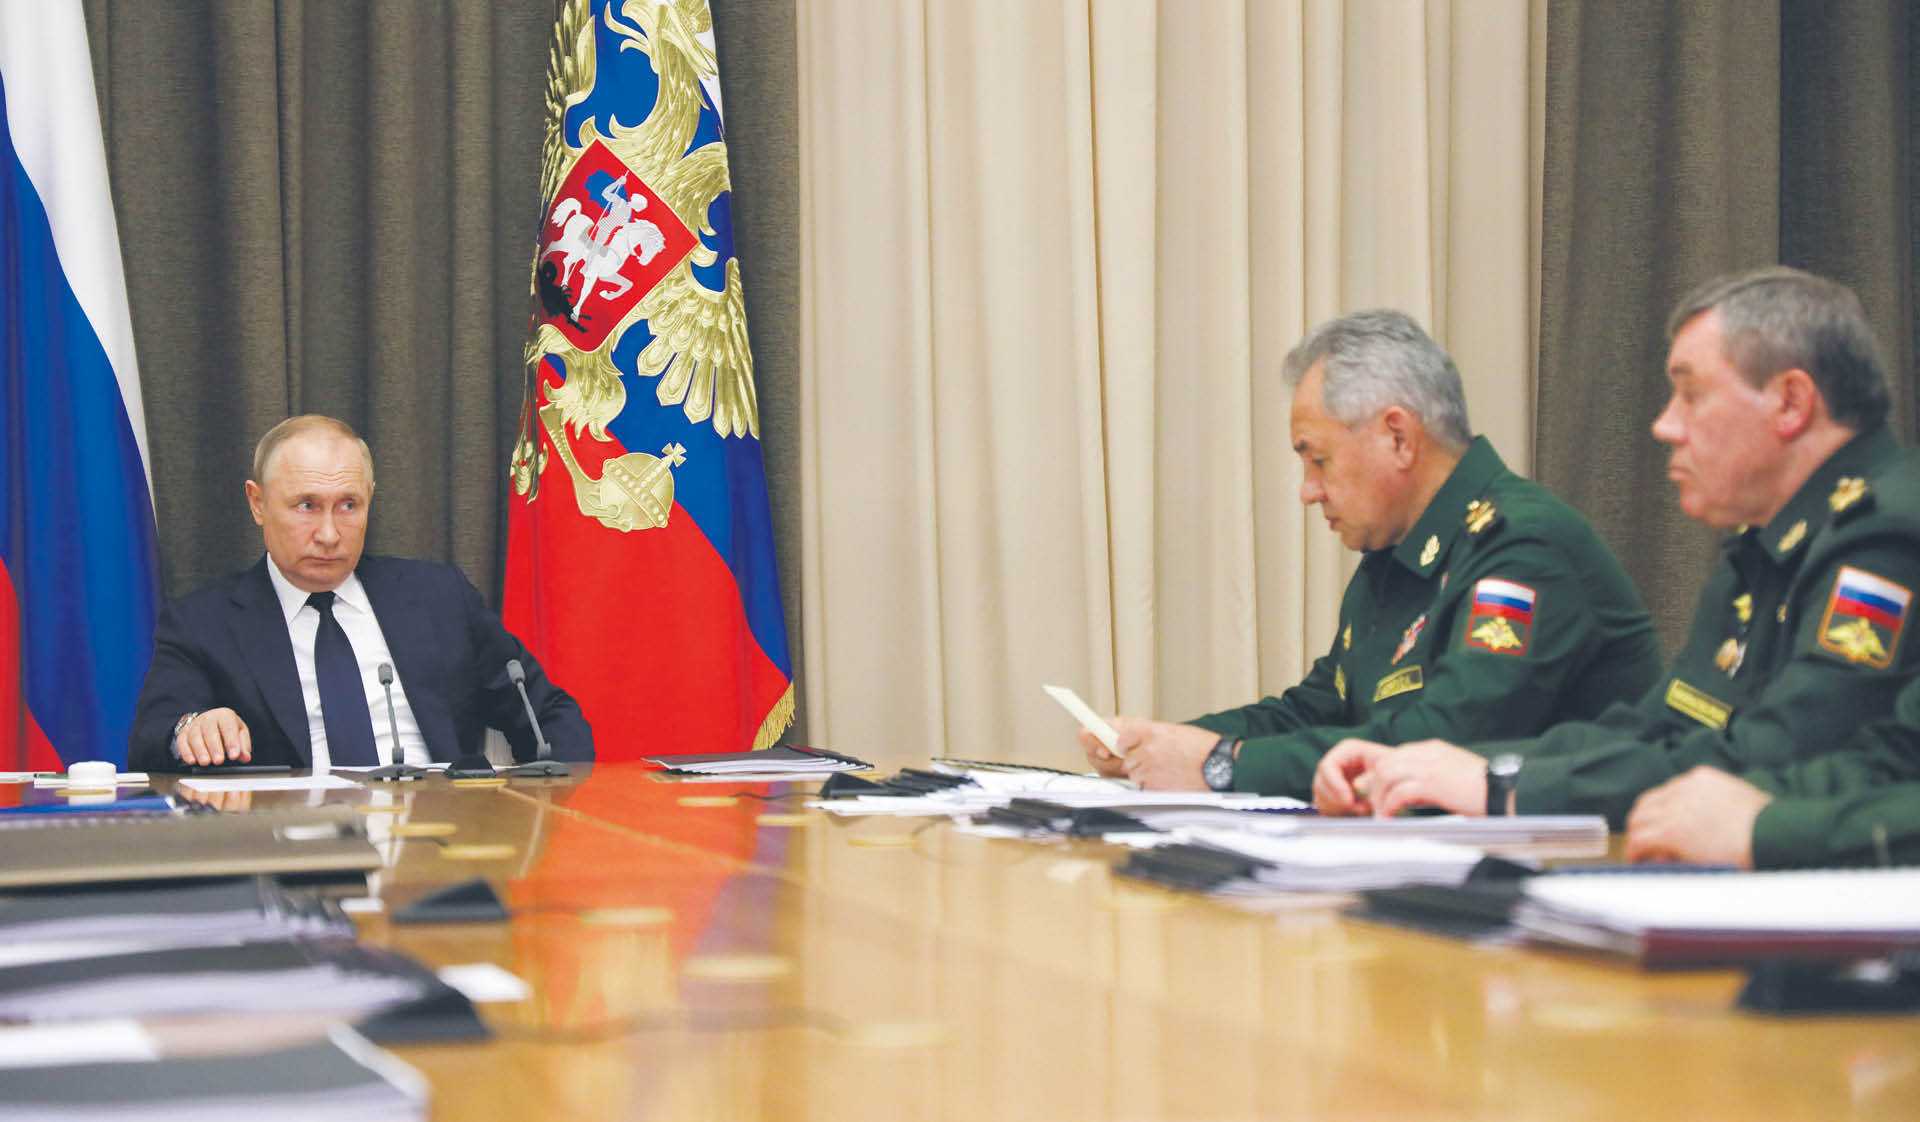 Władimir Putin, minister obrony Siergiej Szojgui jego zastępca Walerij Gierasimow. Spotkanie w rezydencji Bocharow Ruchei